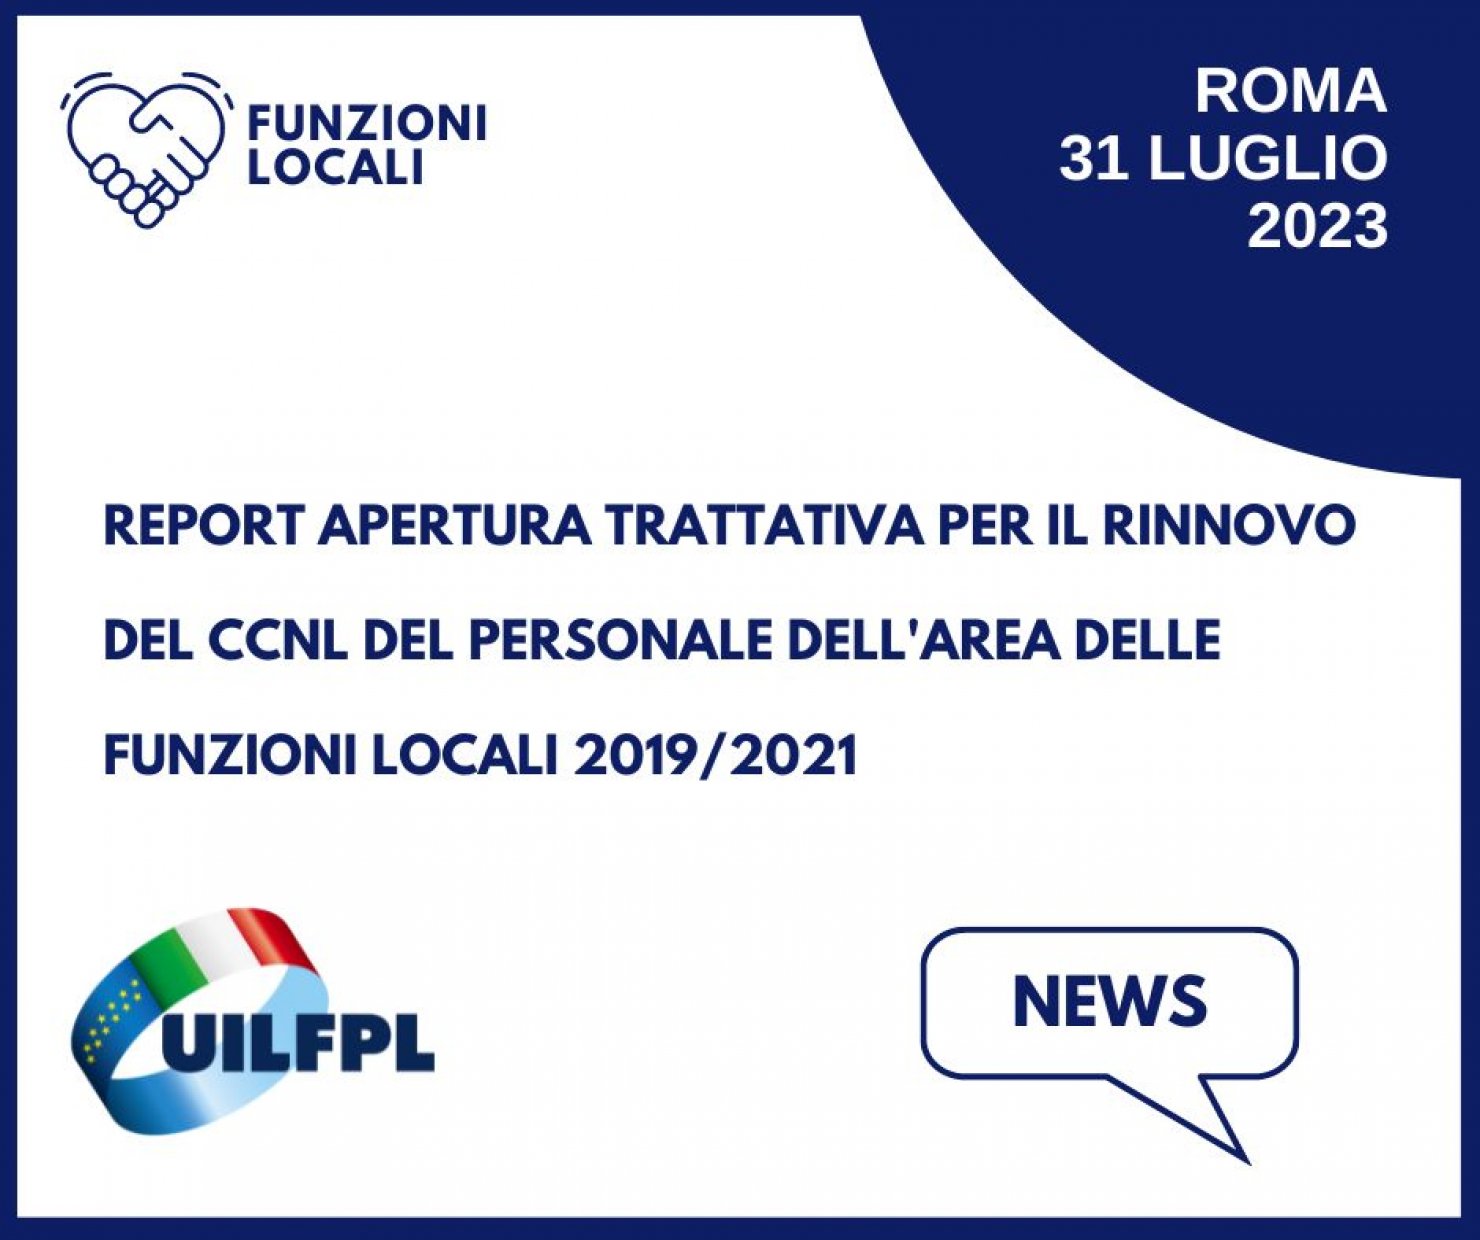 Report riunione di apertura della trattativa per il rinnovo contrattuale del CCNL del personale dell’Area delle Funzioni Locali 2019/2021